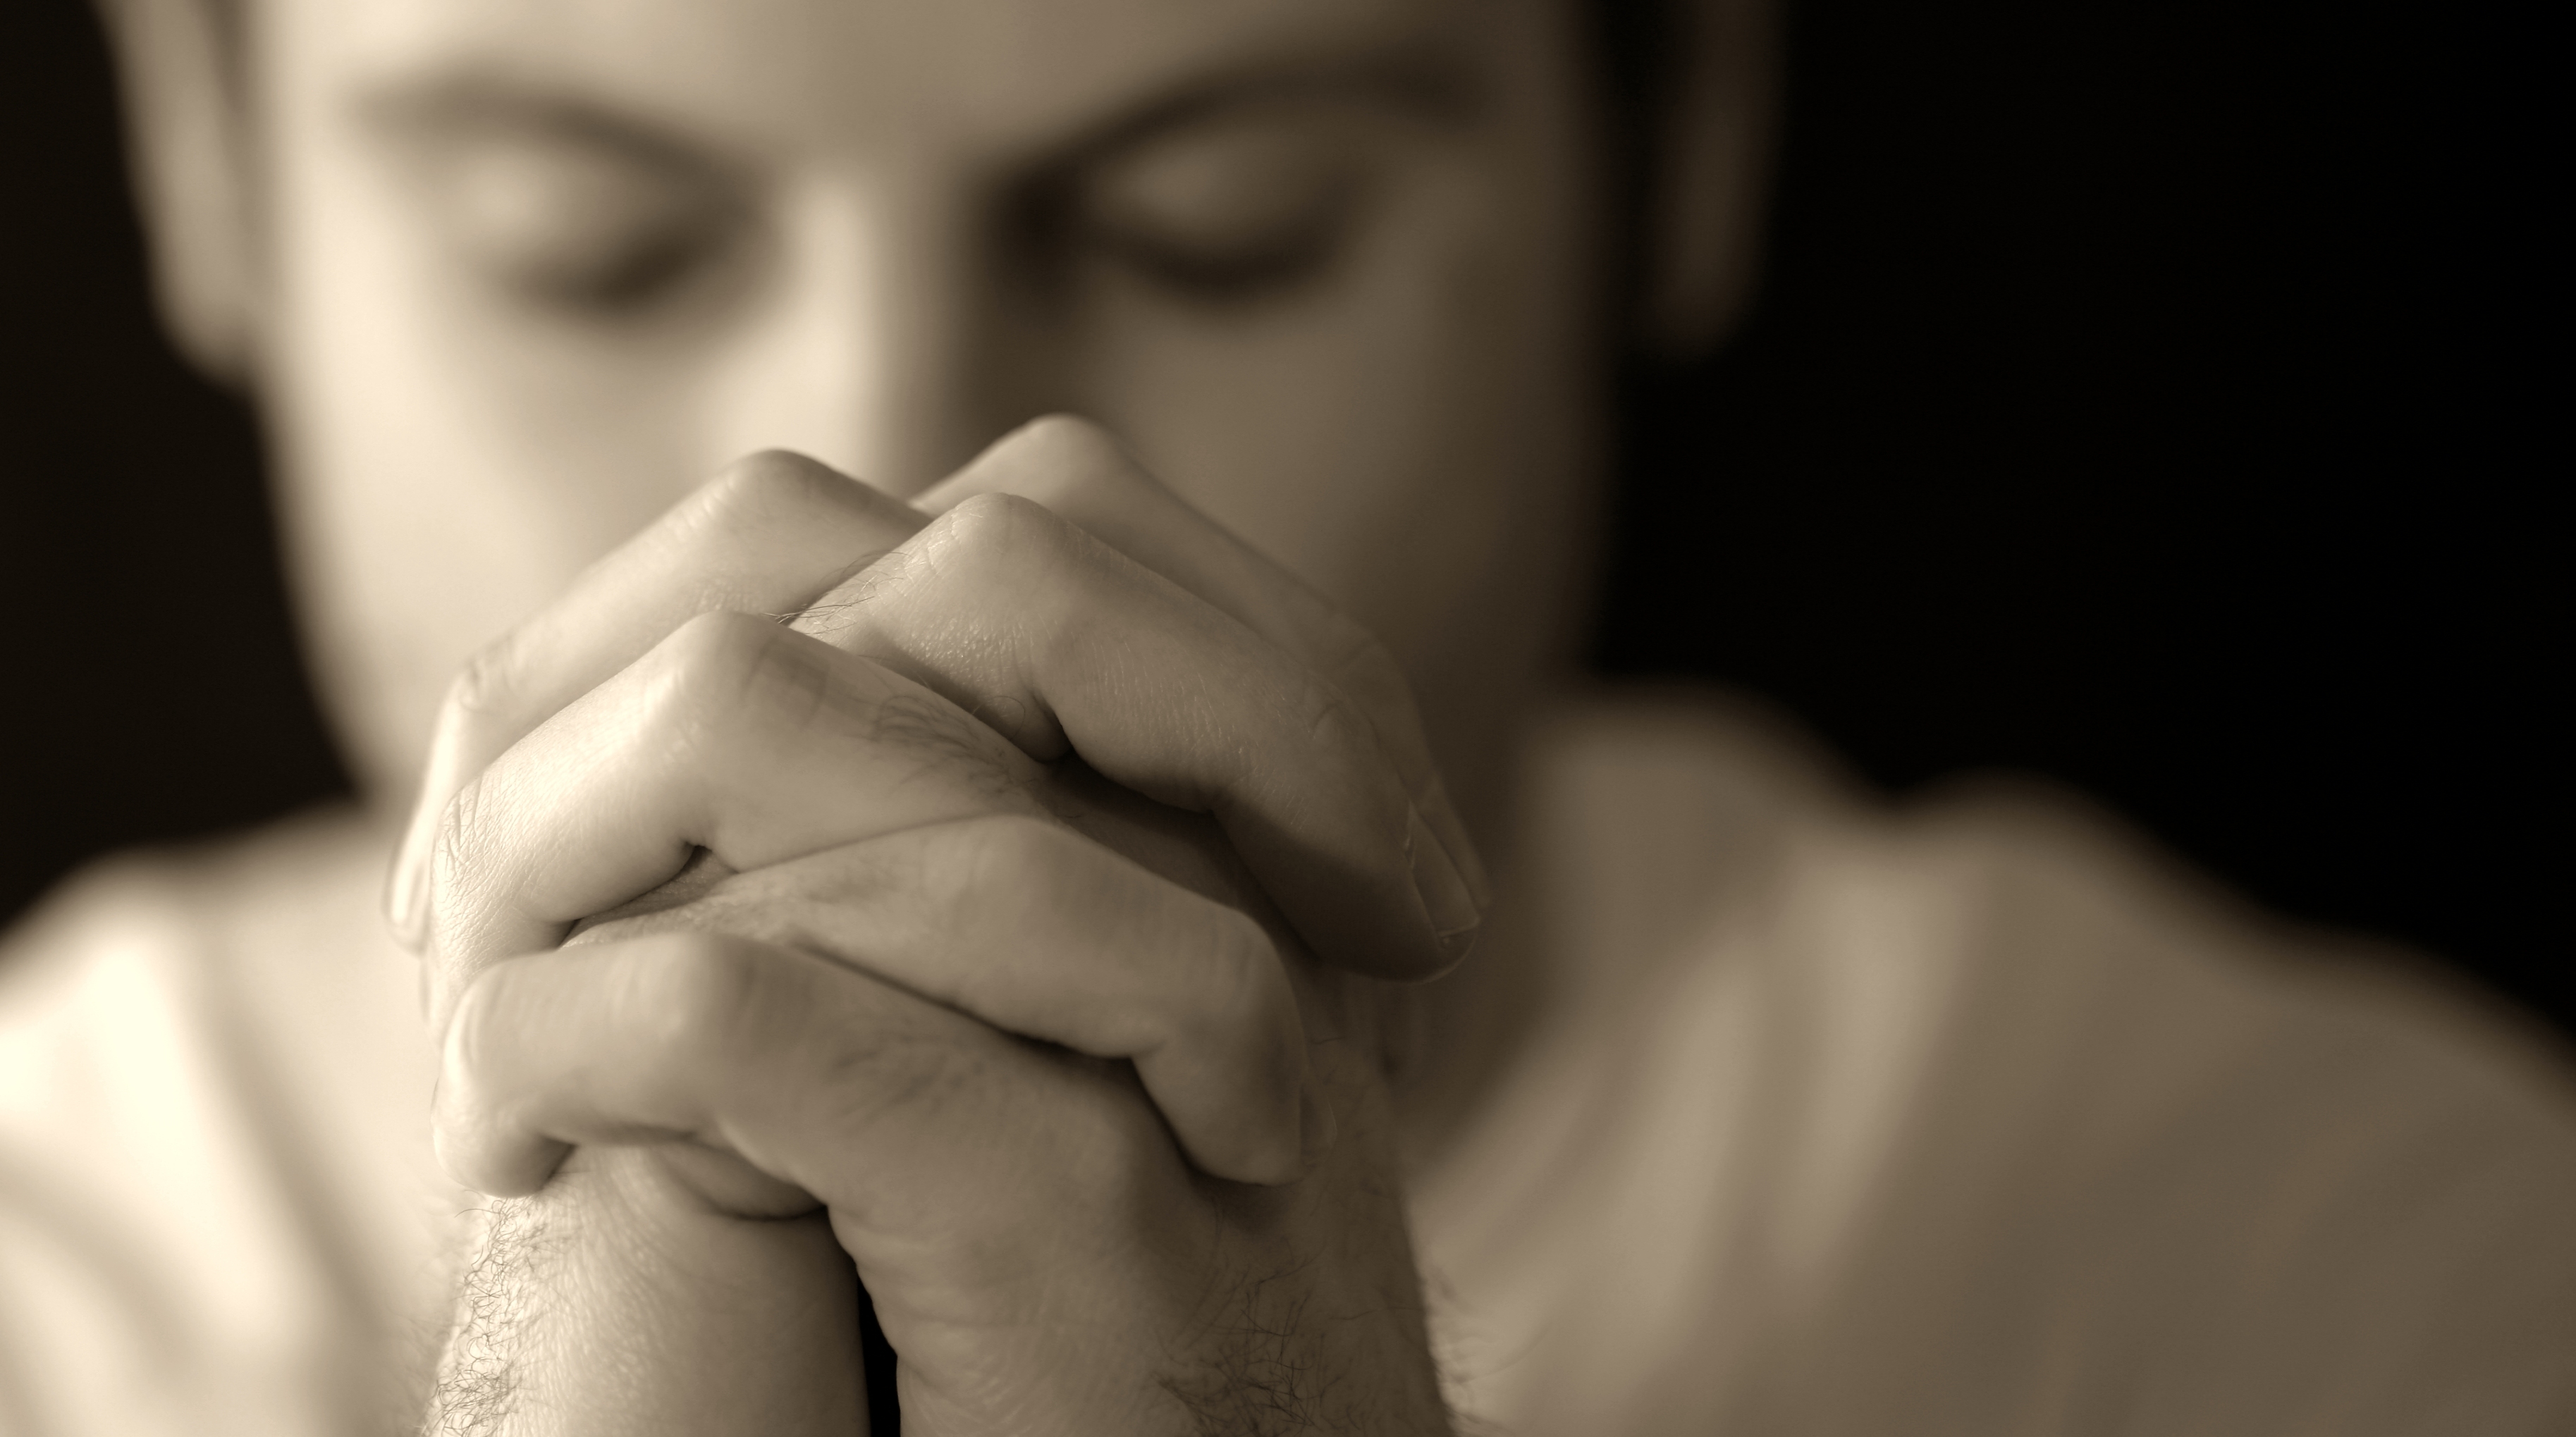 Прощение 12. Человек молится. Парень молится. Юноша молится. Мужчина молится Богу.